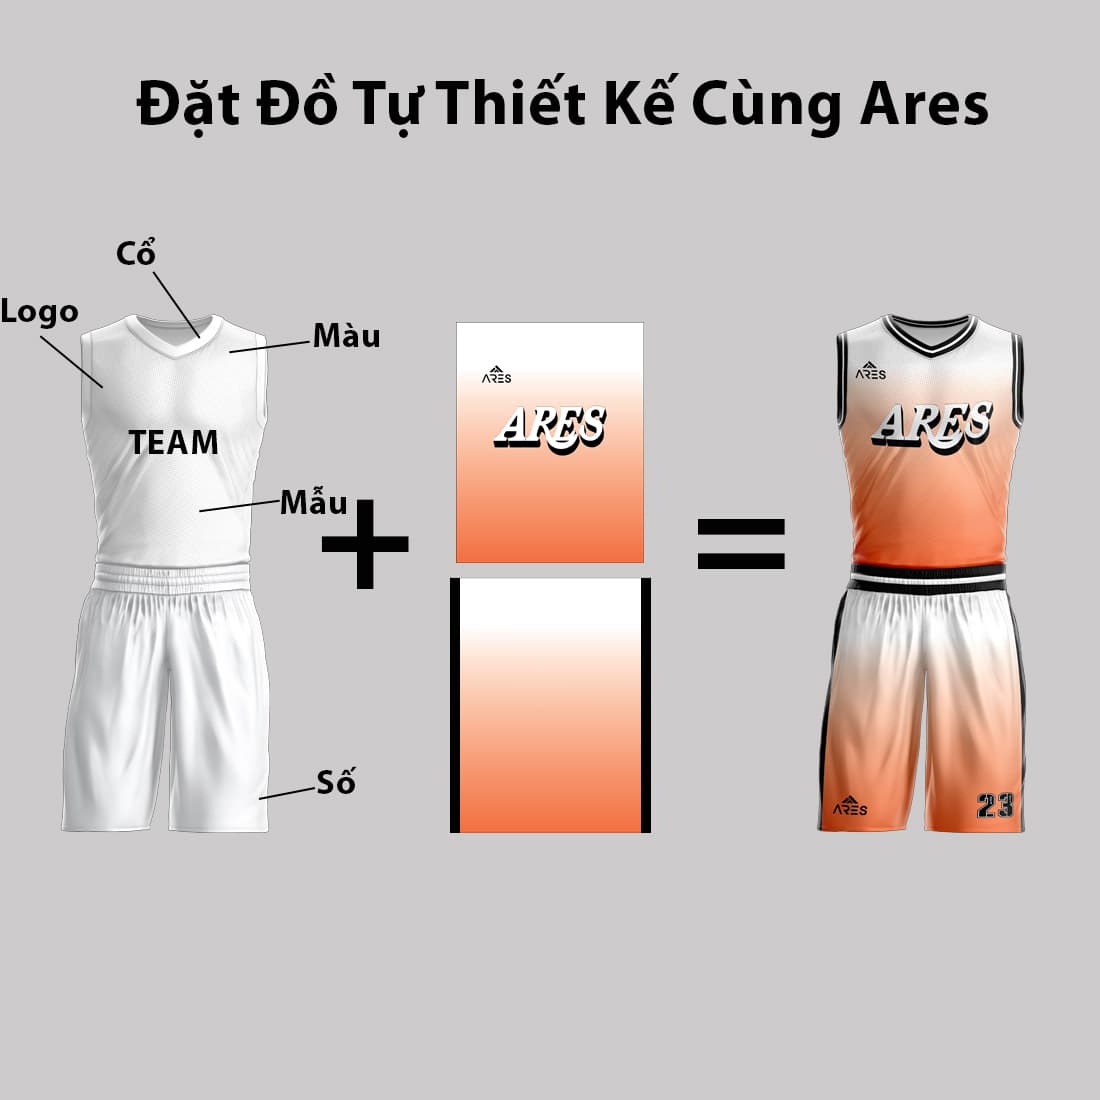 Đặt đồng phục bóng rổ tự thiết kế theo yêu cầu